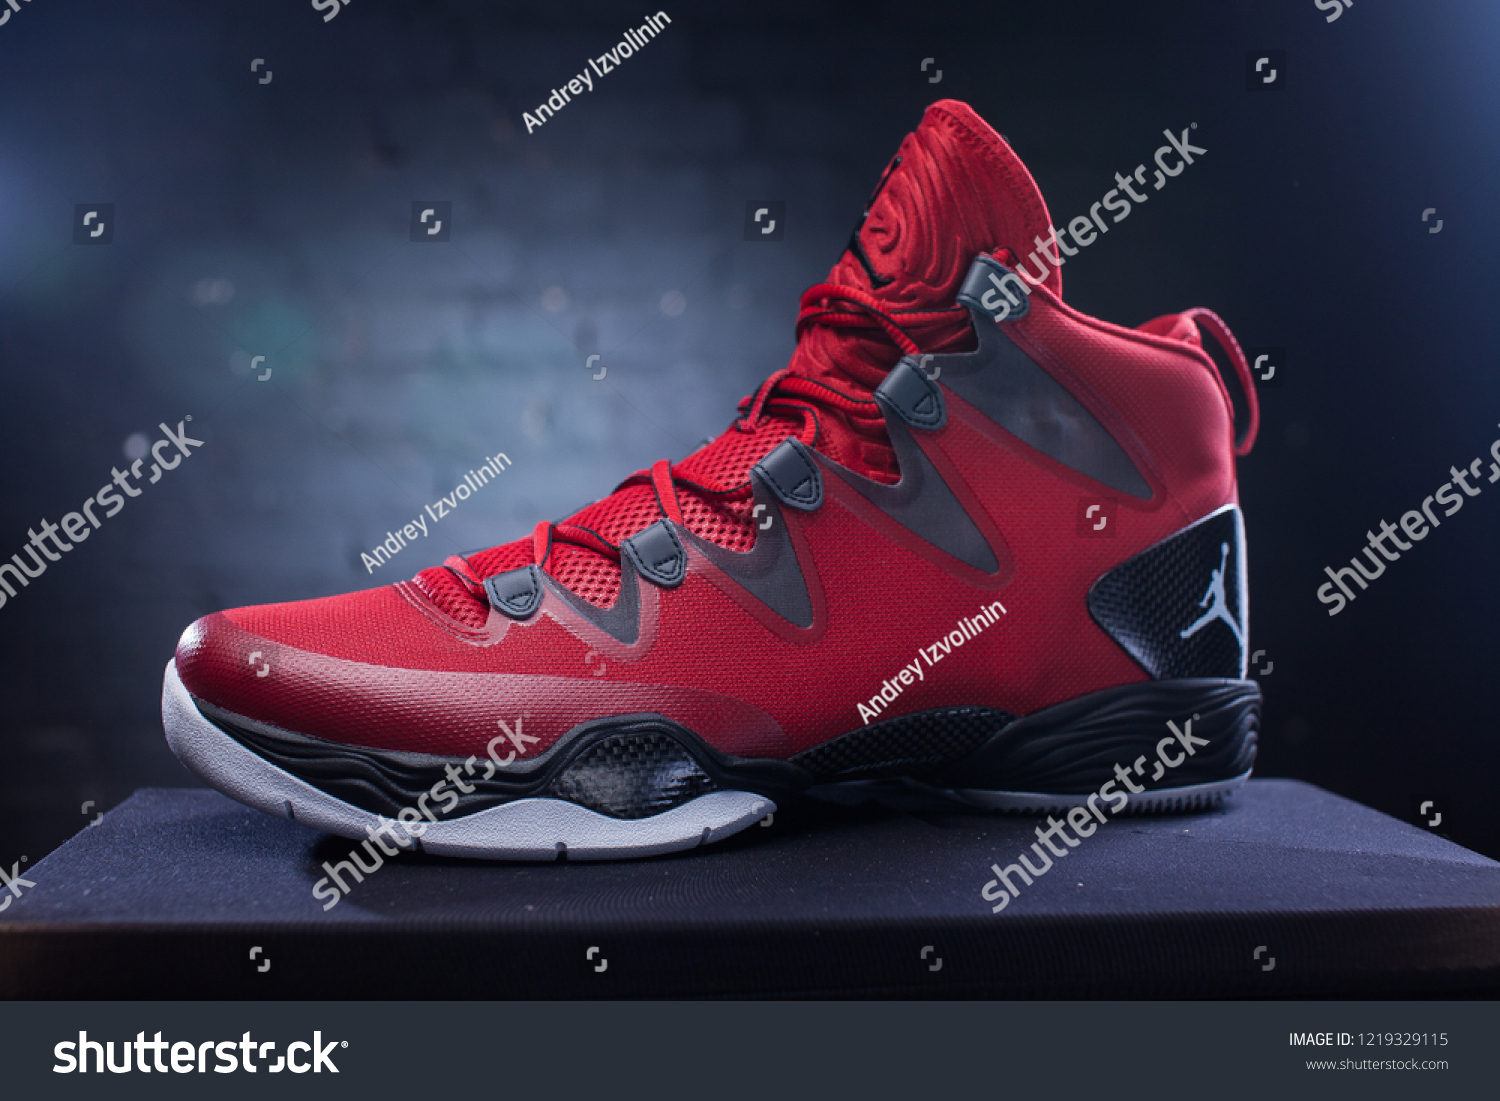 fashionable basketball shoes